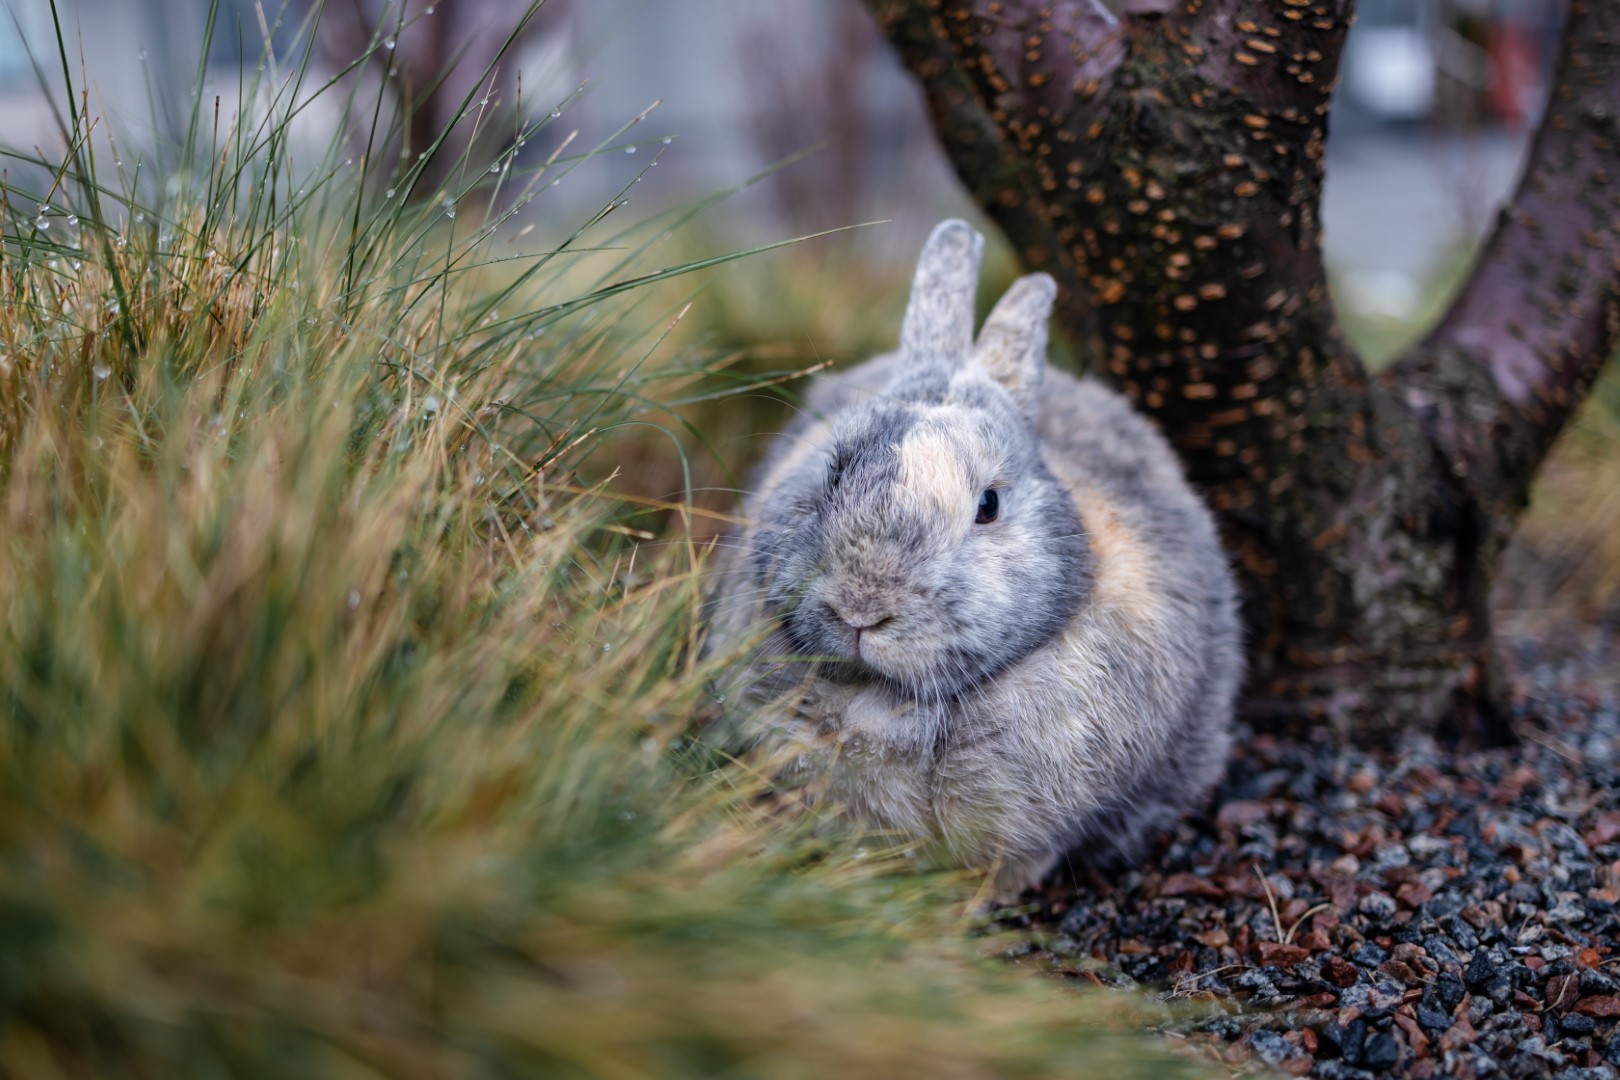 Wet Cute Rabbit Sitting On Grass After A Rain Show 2023 11 27 05 07 51 Utc